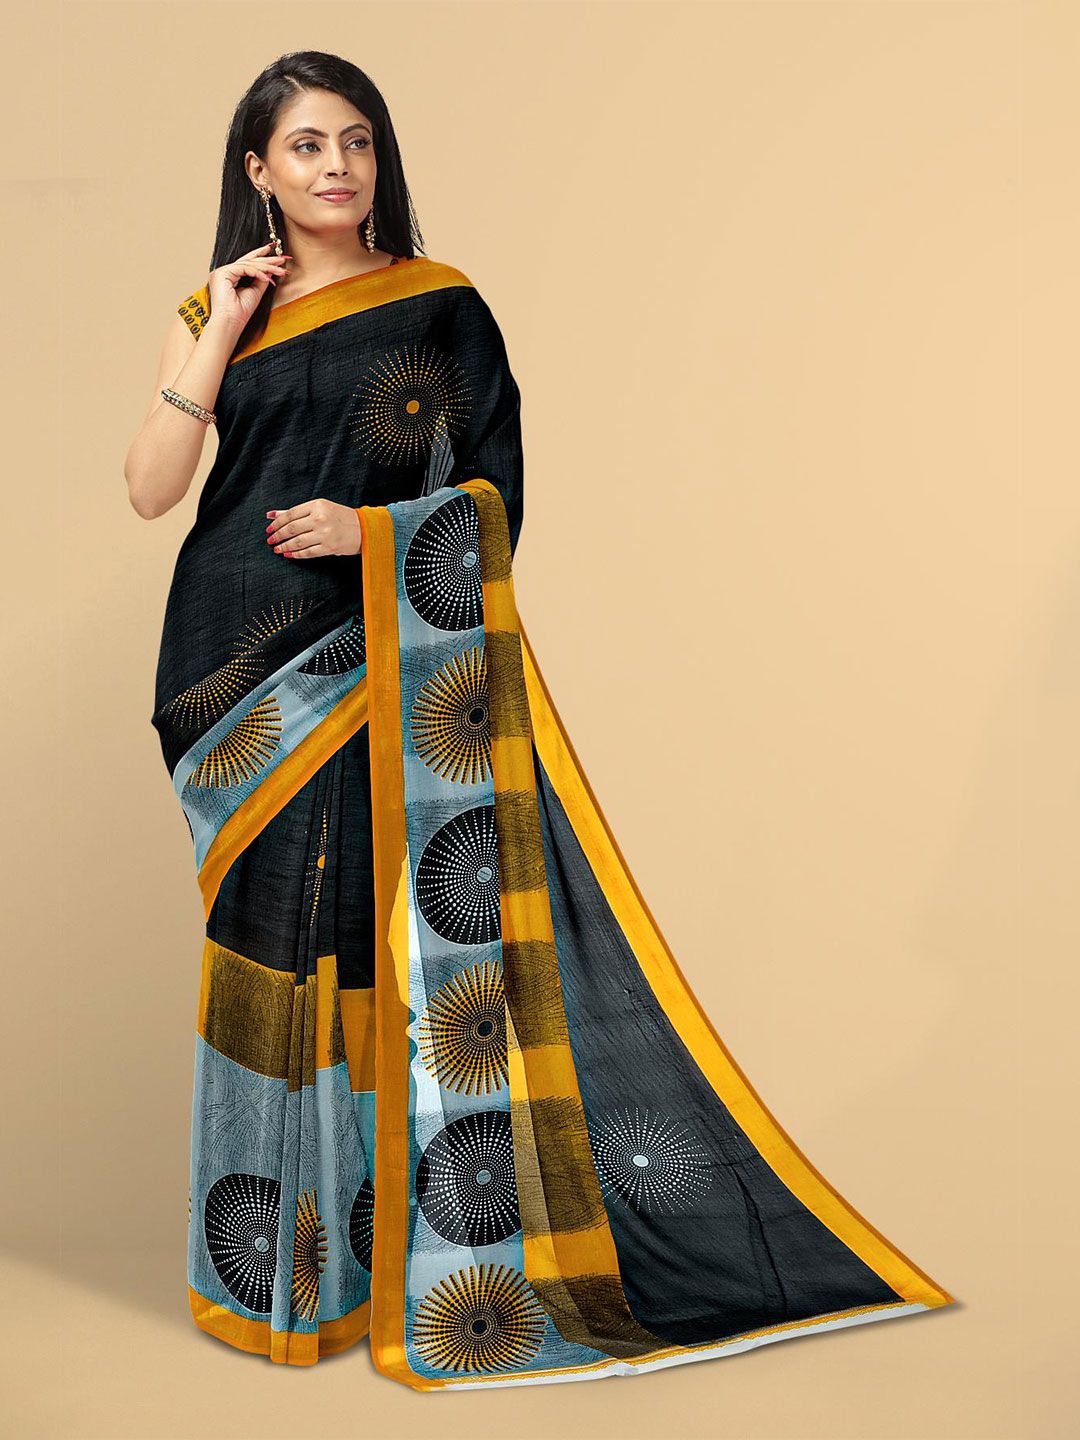 Kalamandir Black & Yellow Saree Price in India